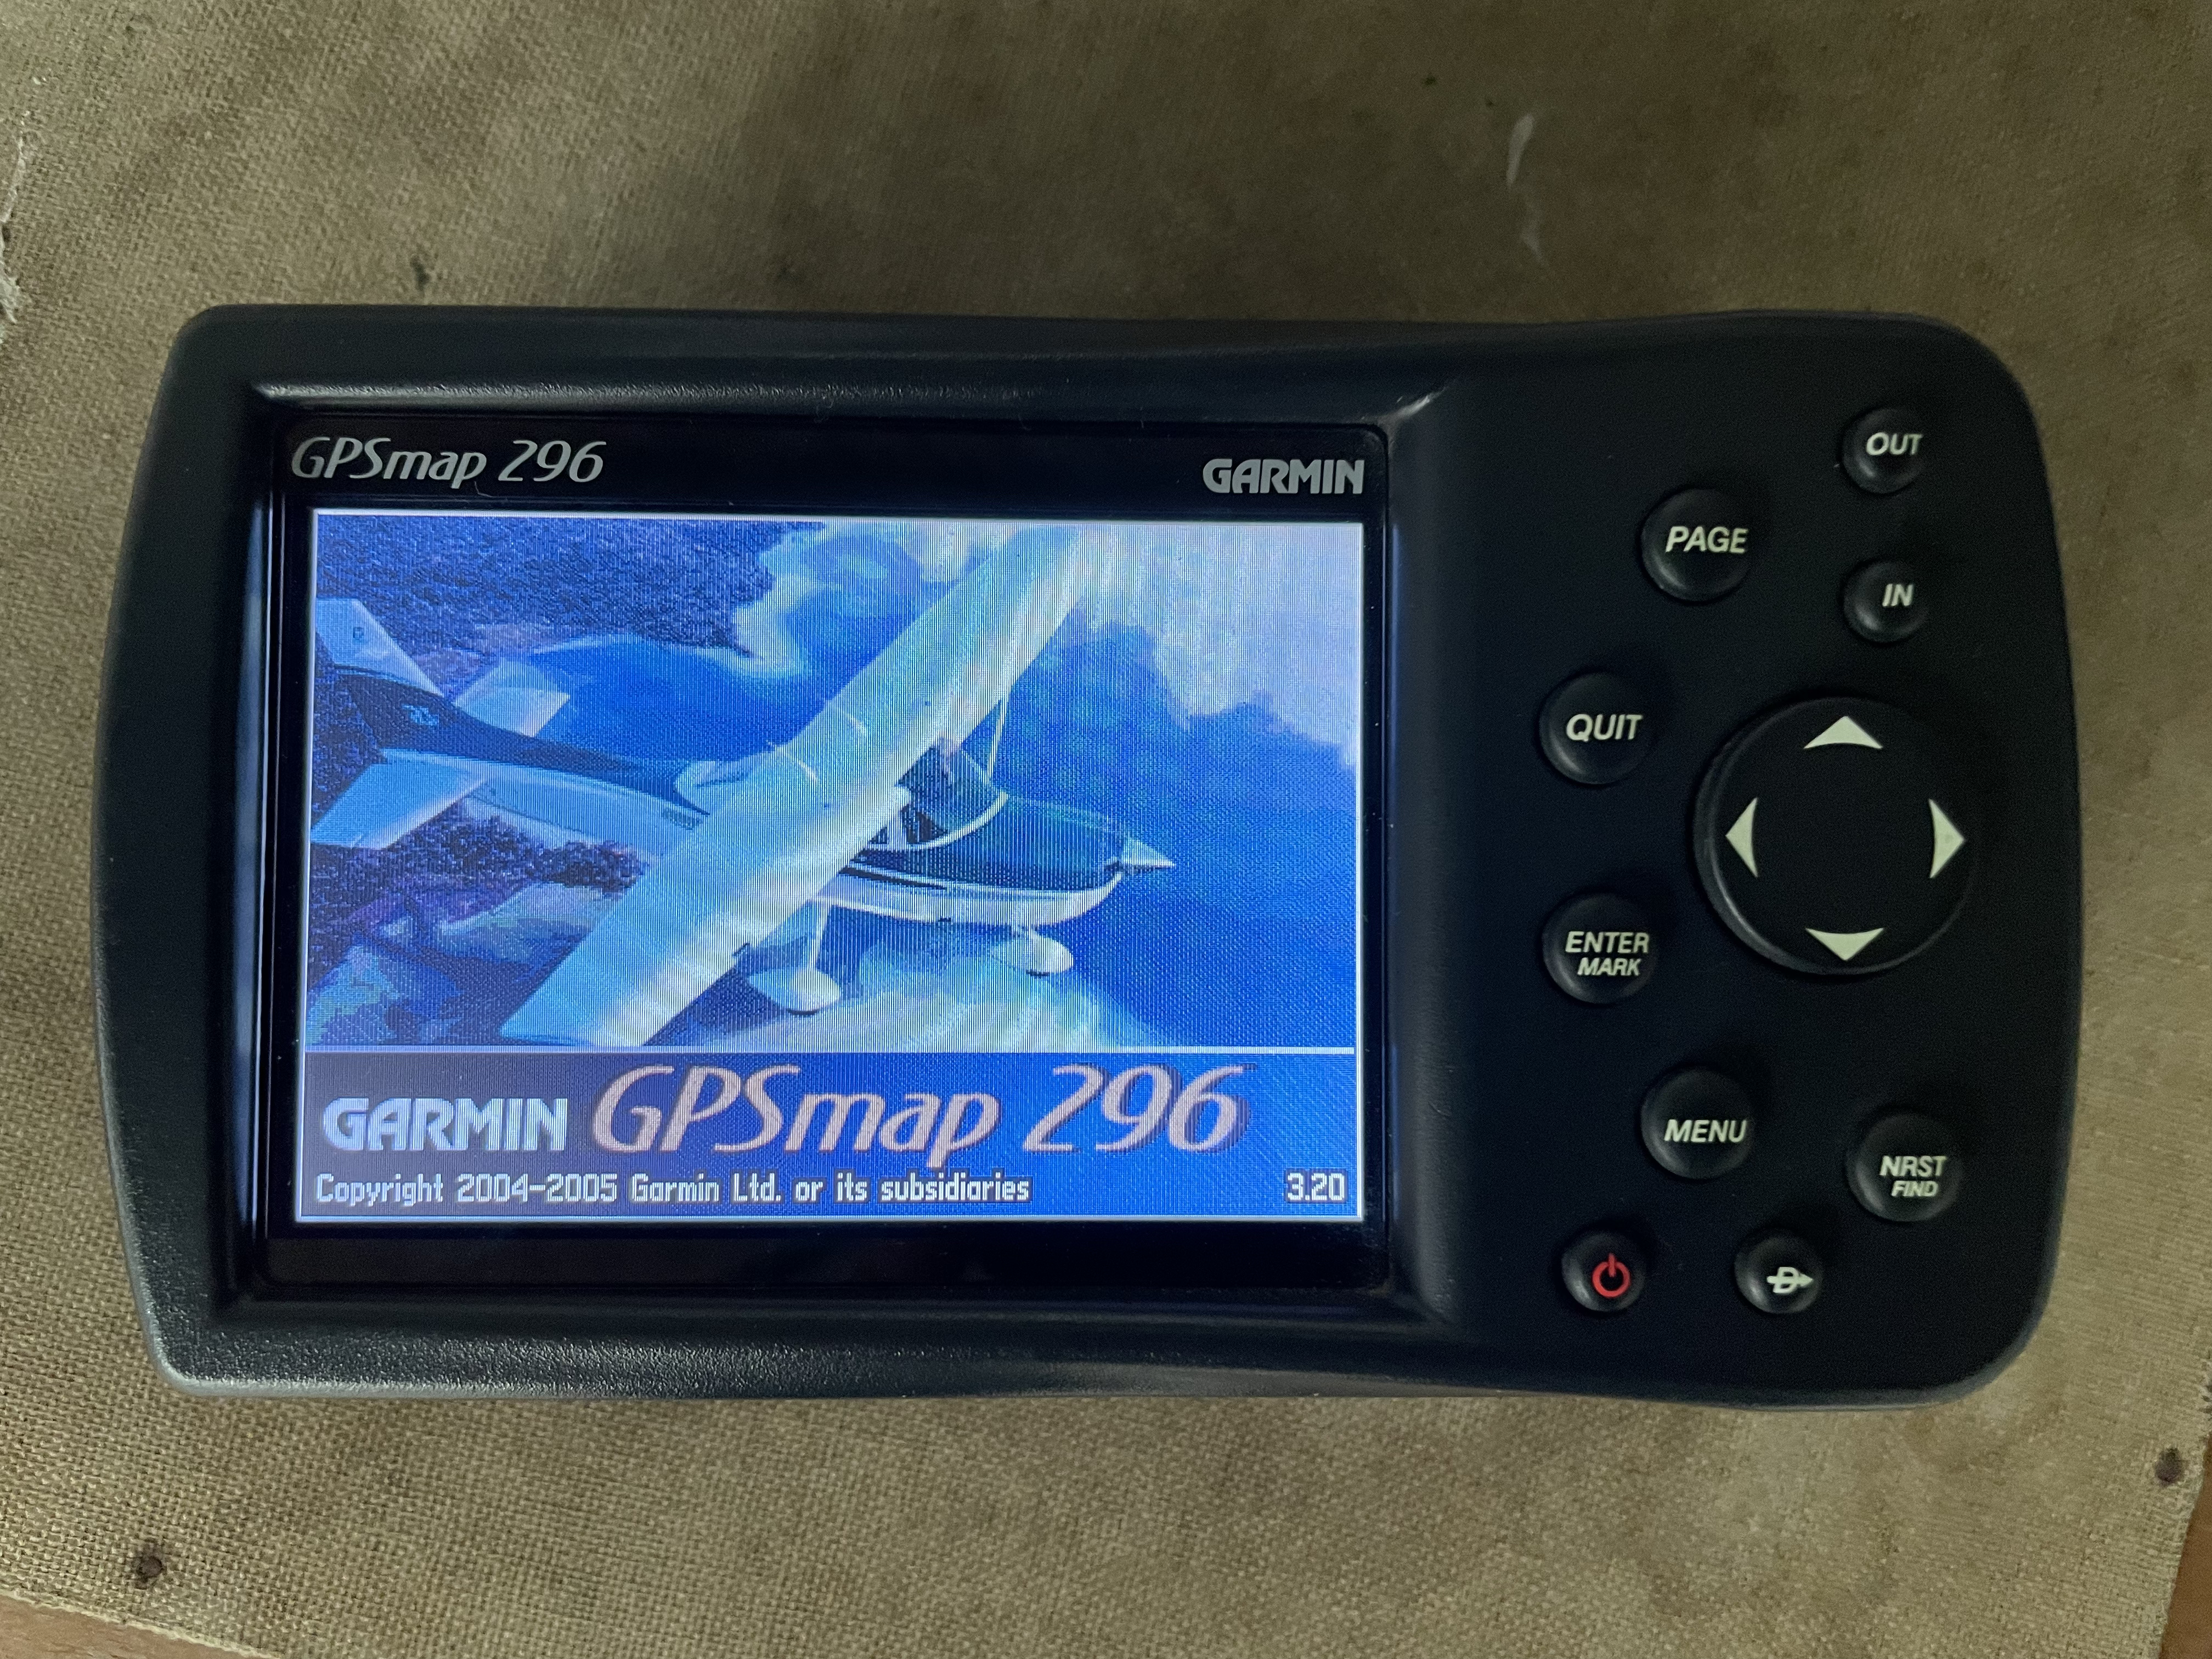 Garmin GPSmap 296 receiver afors number